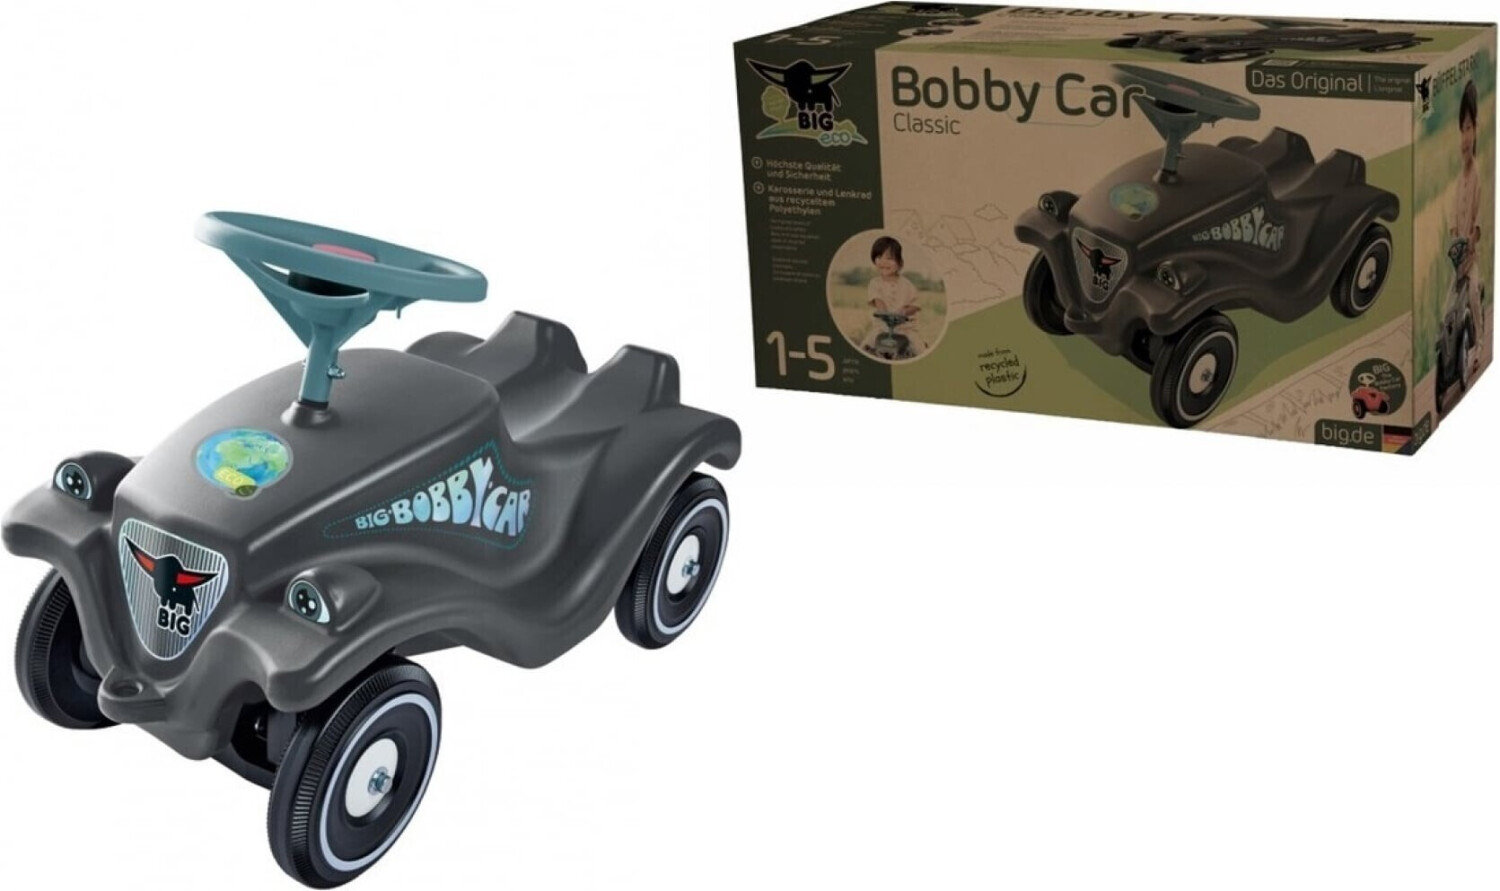 Big Bobby Car Classic Eco ab € 44,99